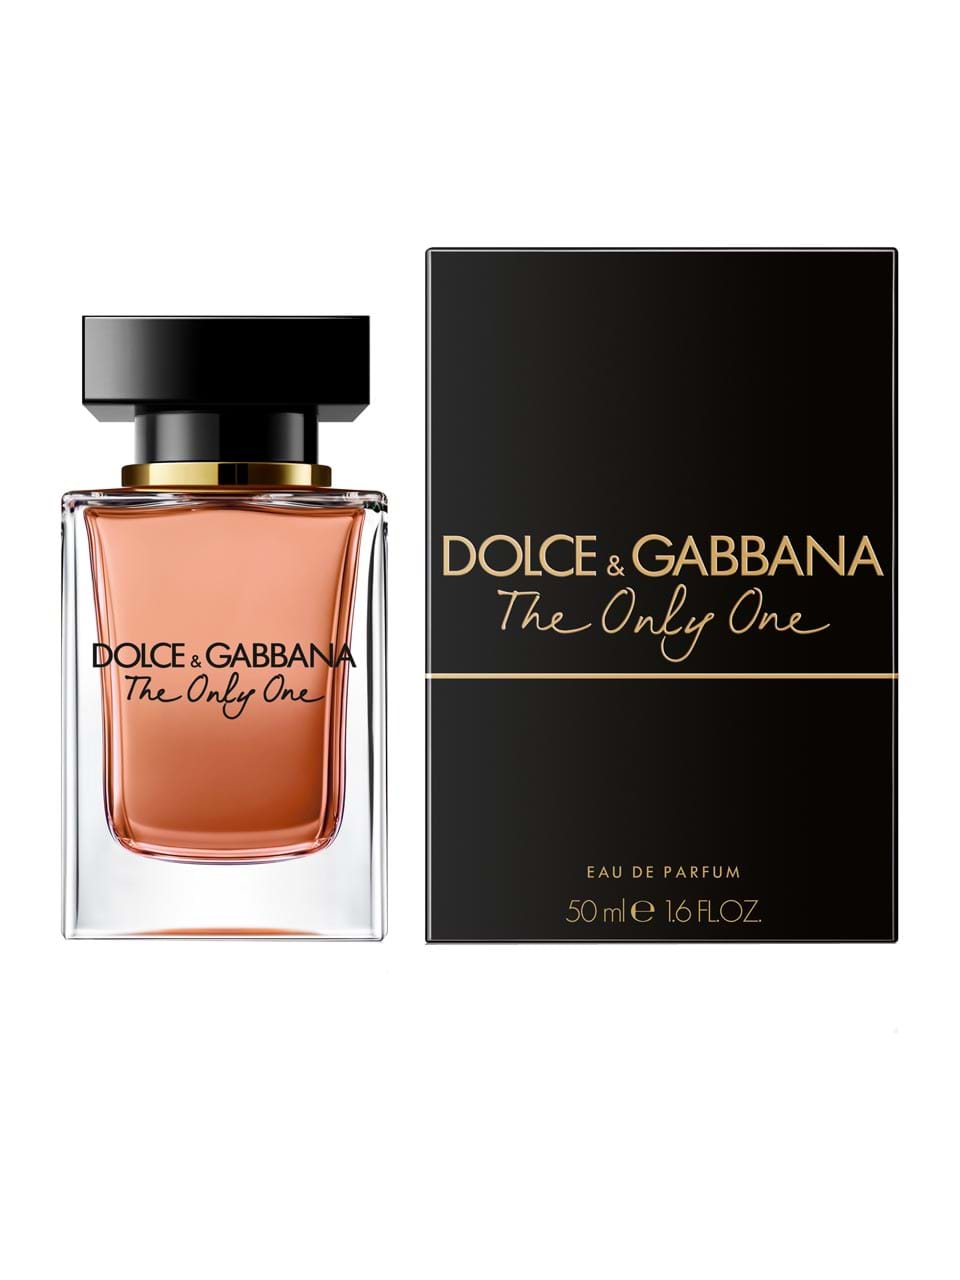 & Gabbana - fragrance him and her - see here